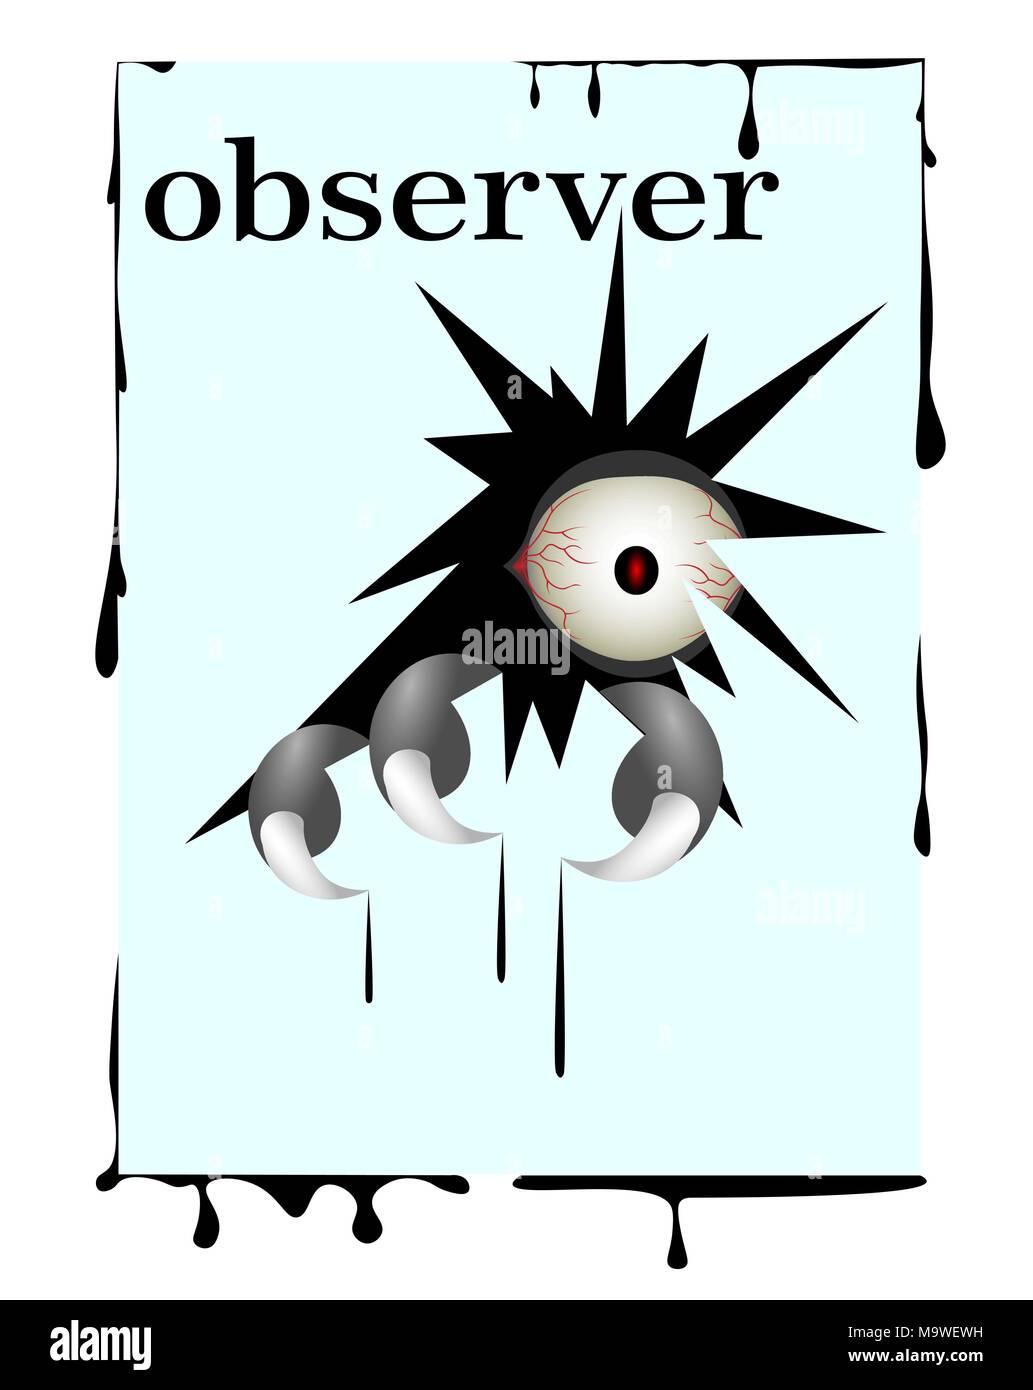 T-shirt design, monsters observer illustration Stock Vector